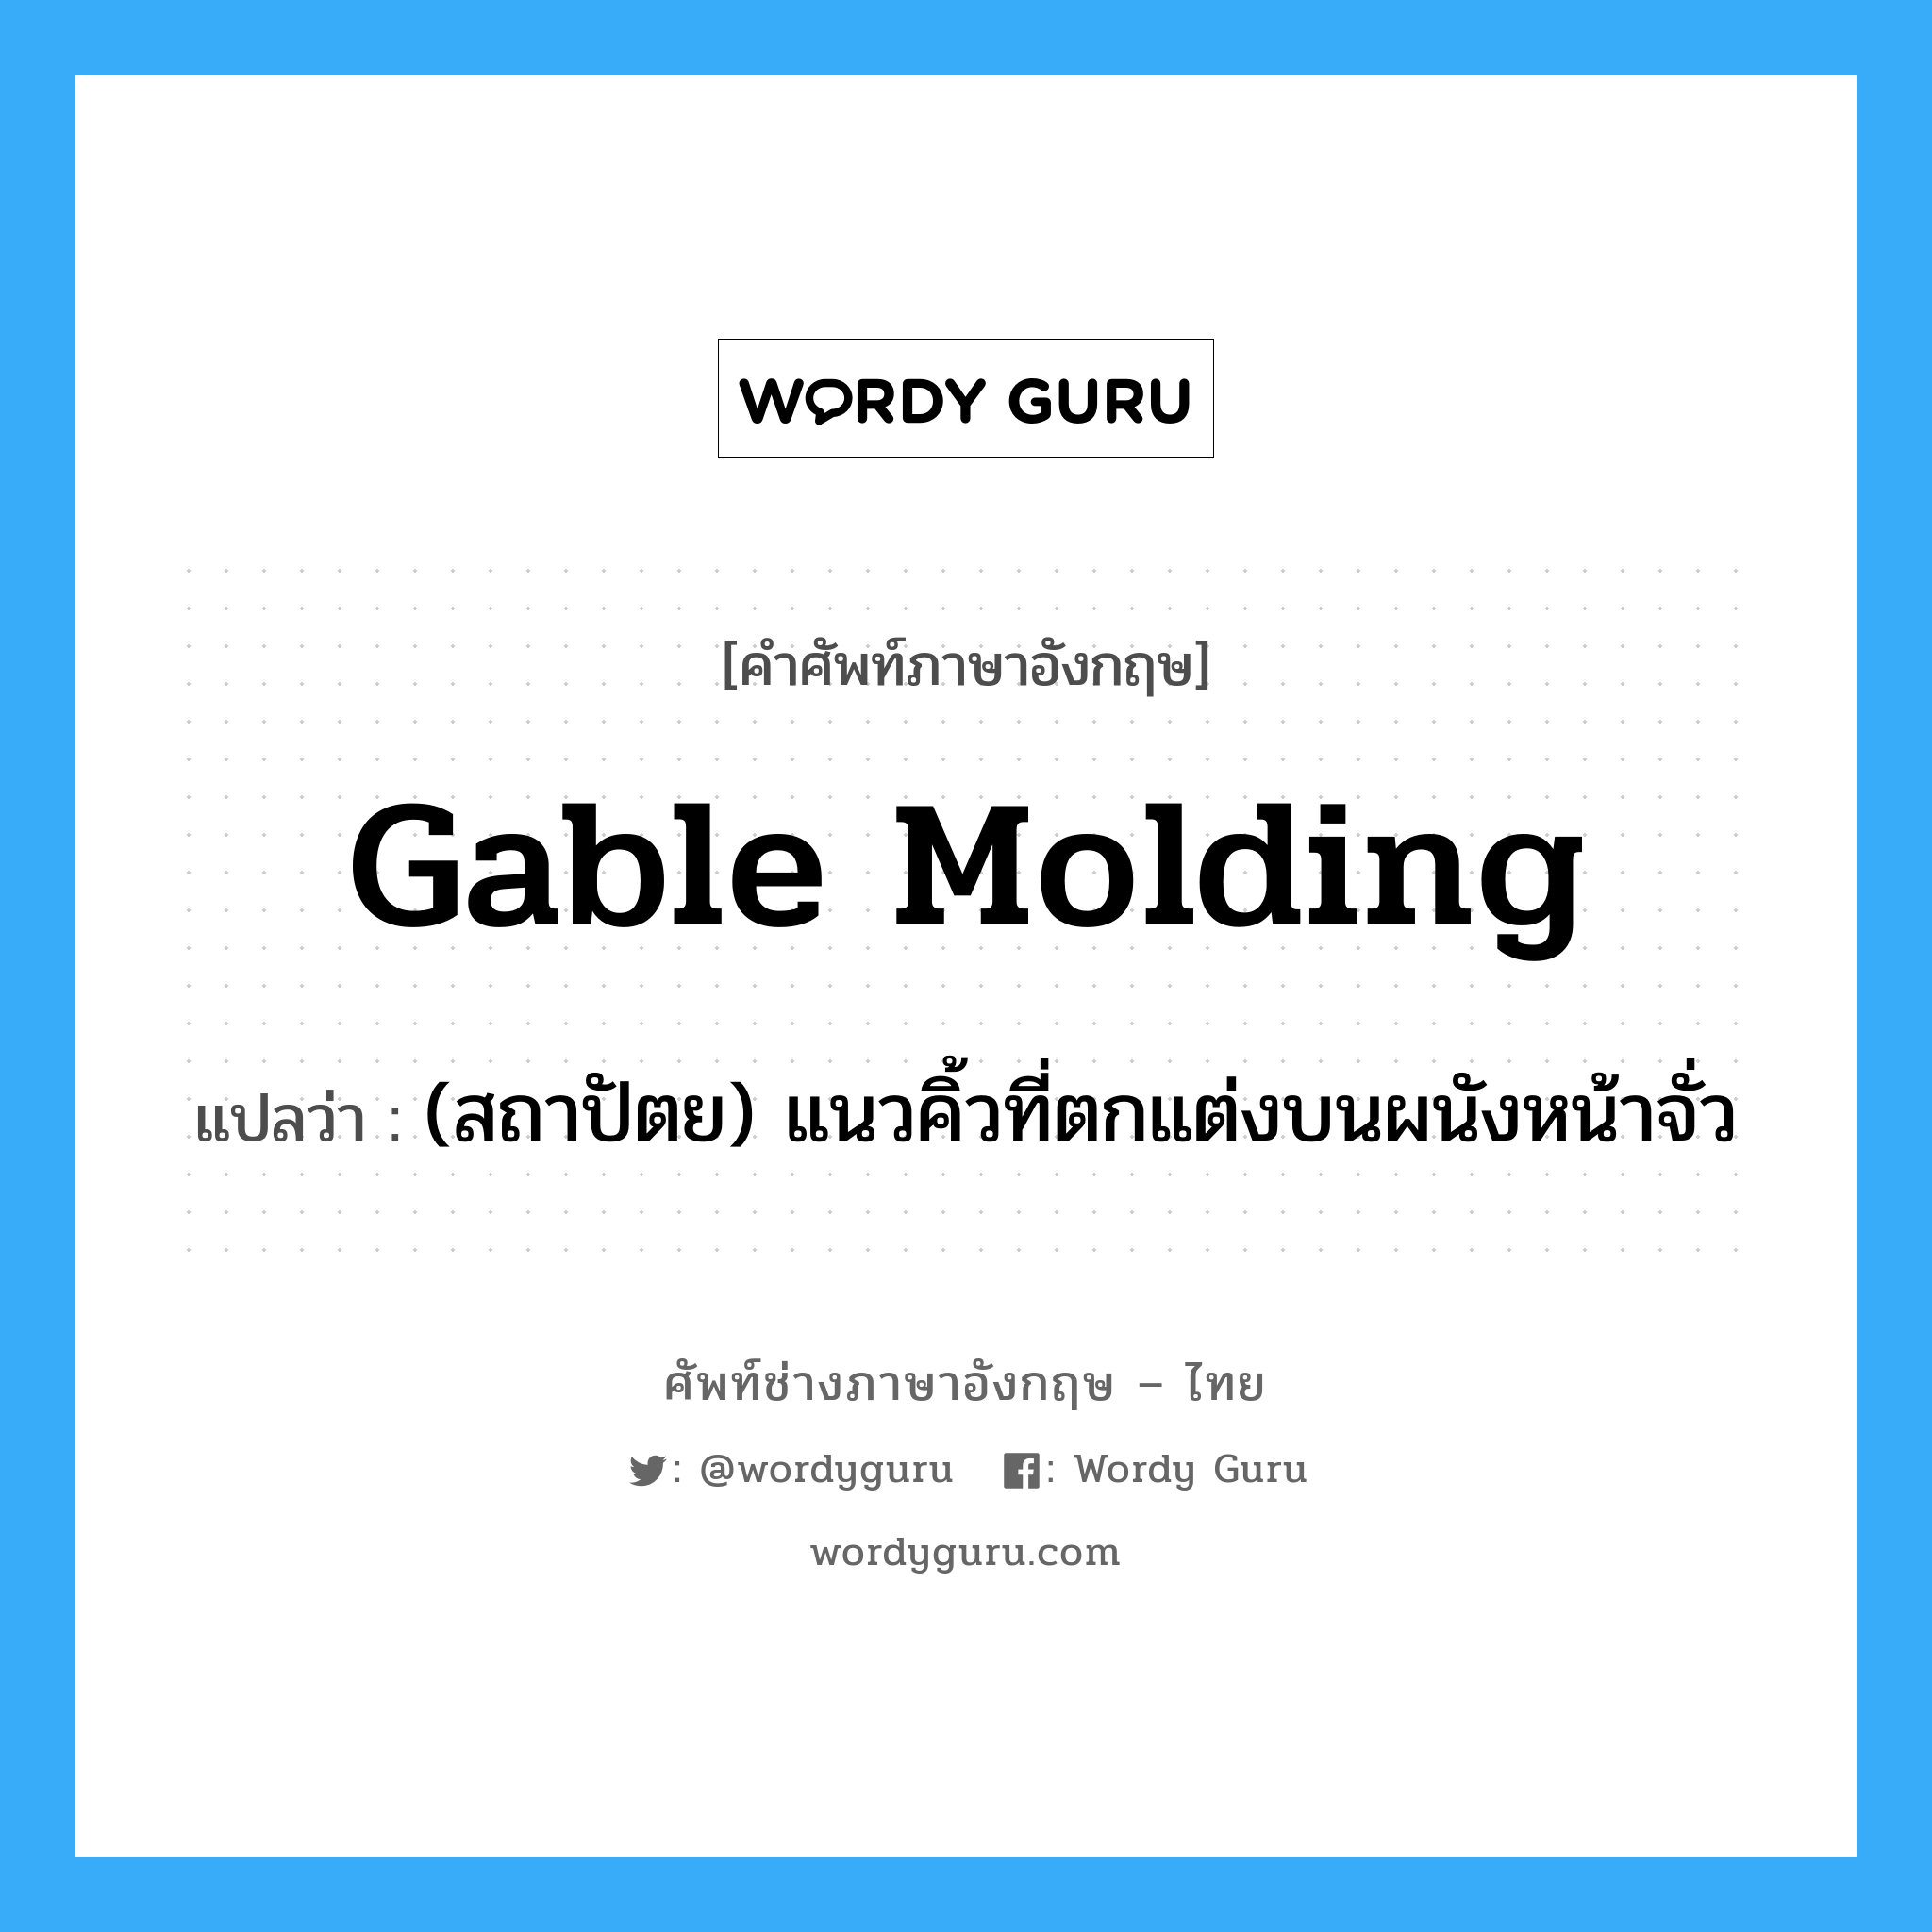 gable molding แปลว่า?, คำศัพท์ช่างภาษาอังกฤษ - ไทย gable molding คำศัพท์ภาษาอังกฤษ gable molding แปลว่า (สถาปัตย) แนวคิ้วที่ตกแต่งบนผนังหน้าจั่ว